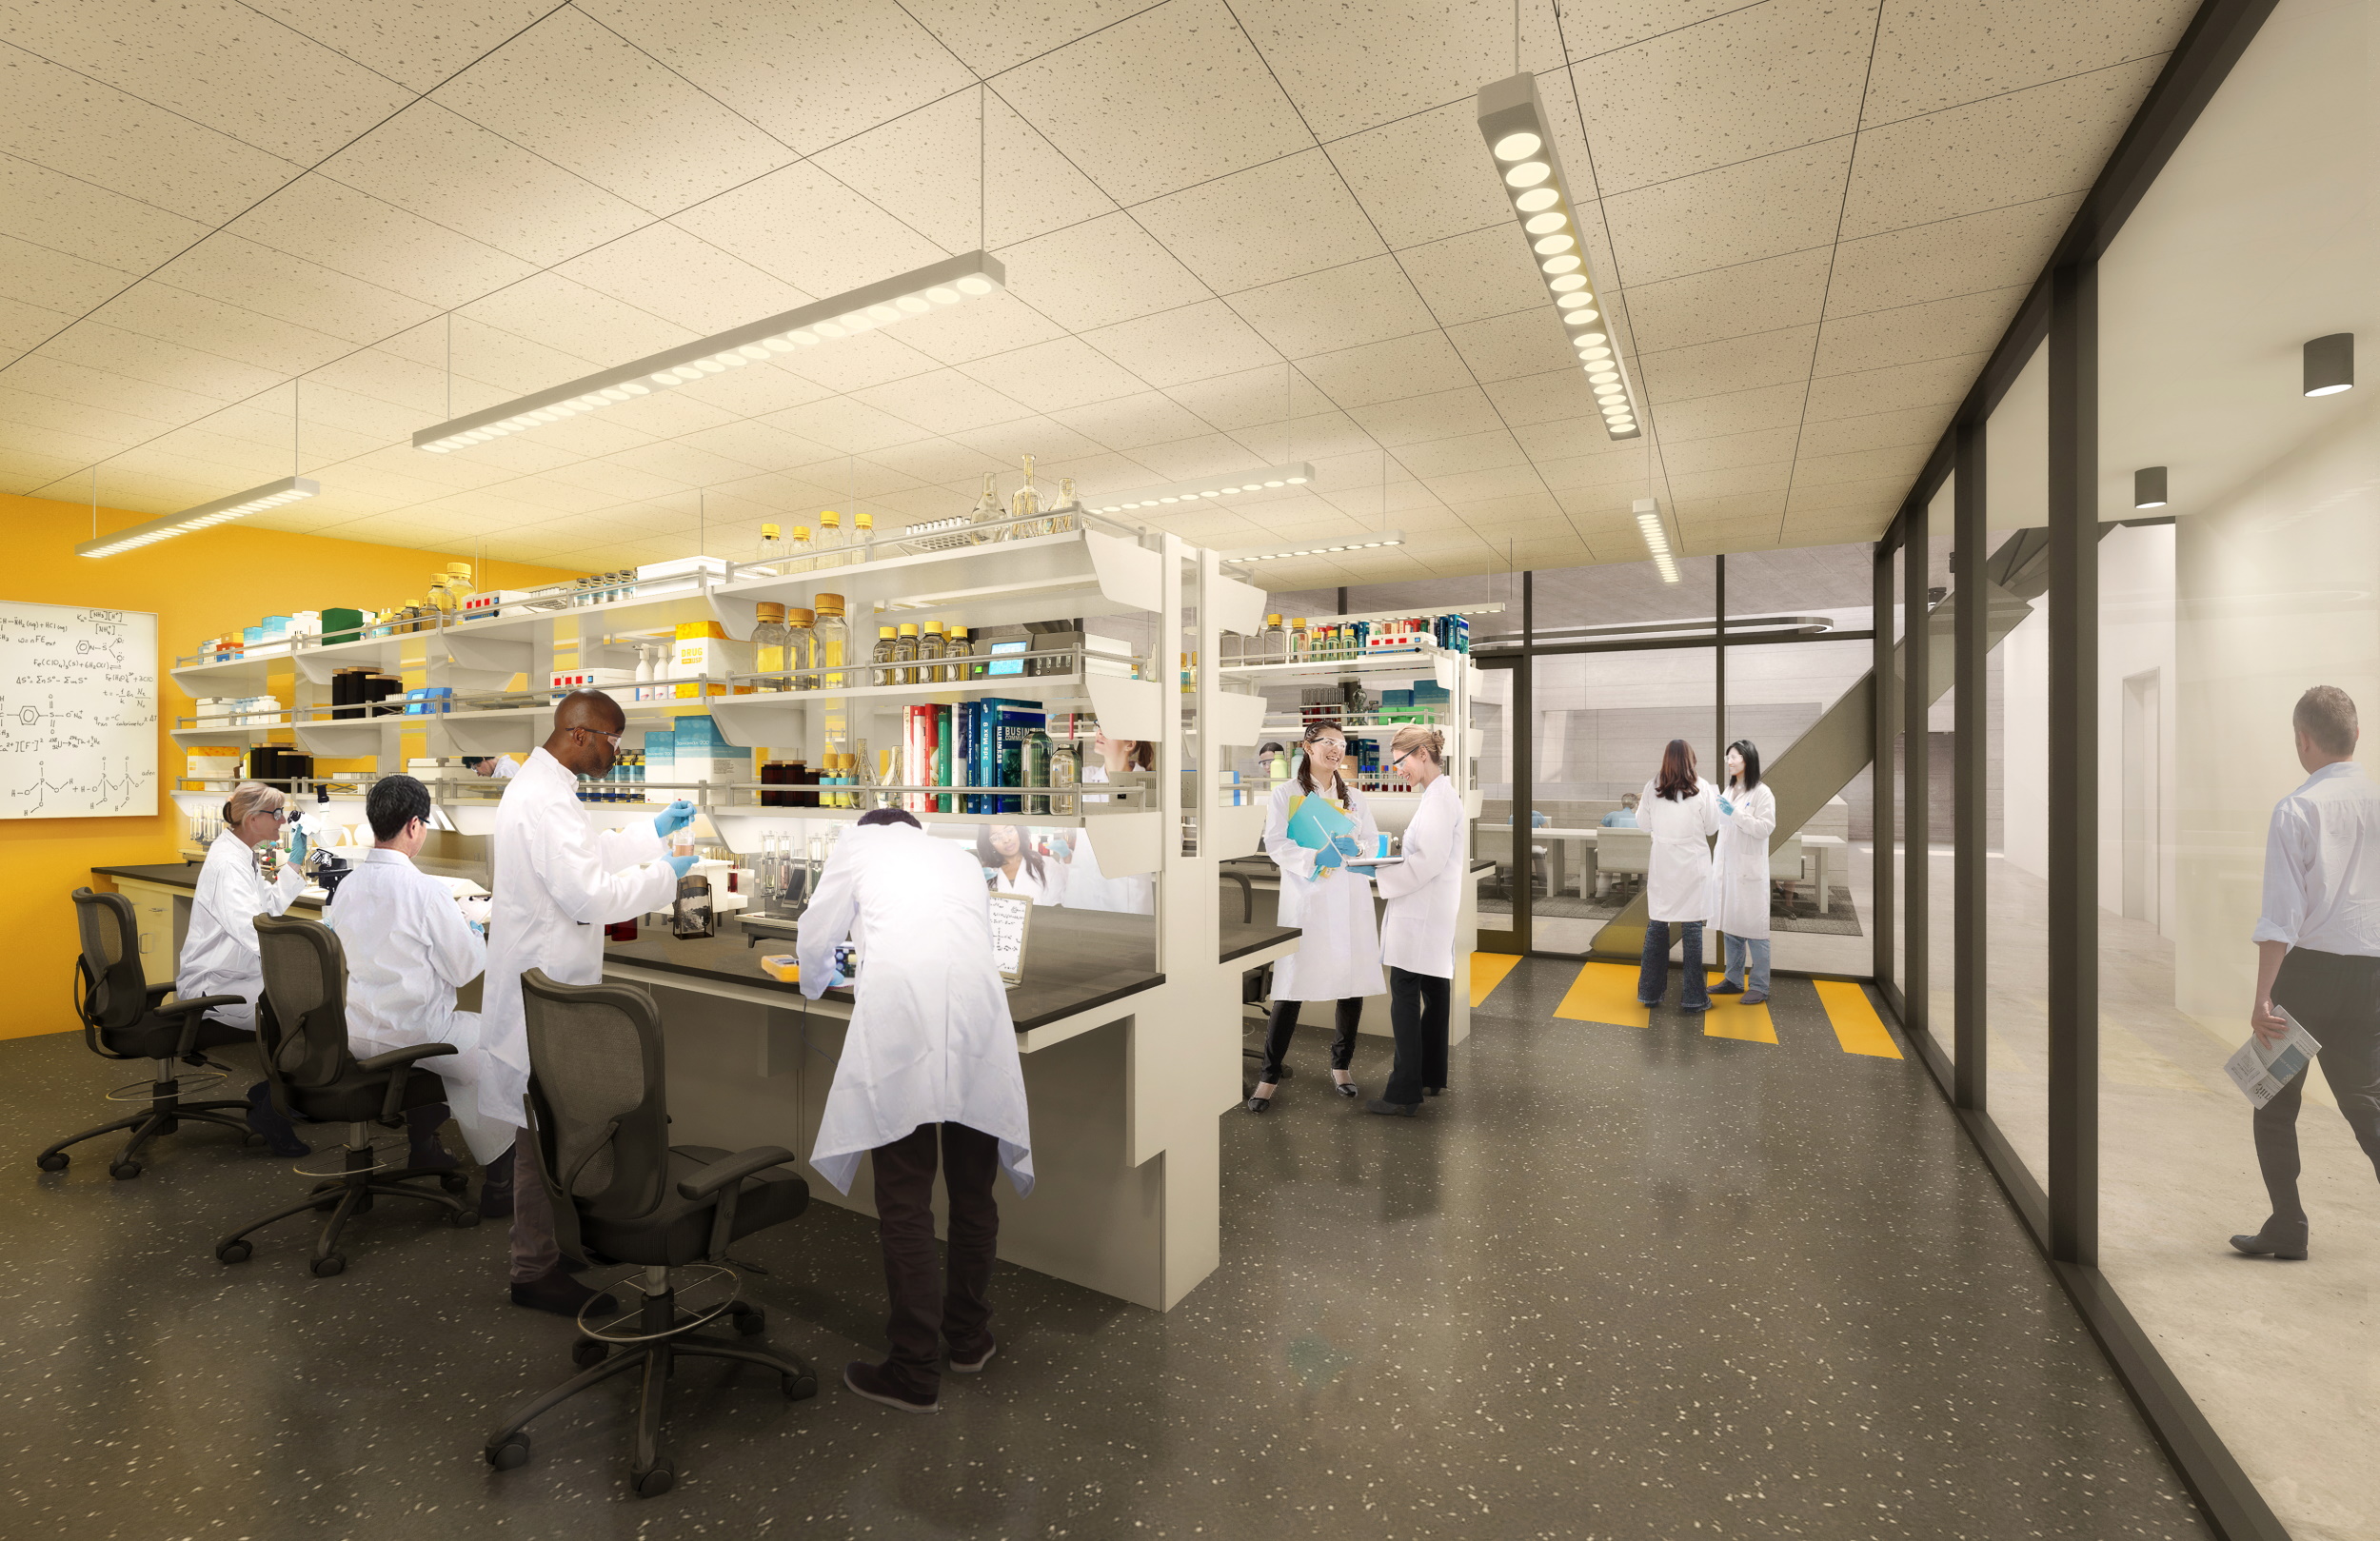 Siswa di ruang lab bekerja dengan jas putih.